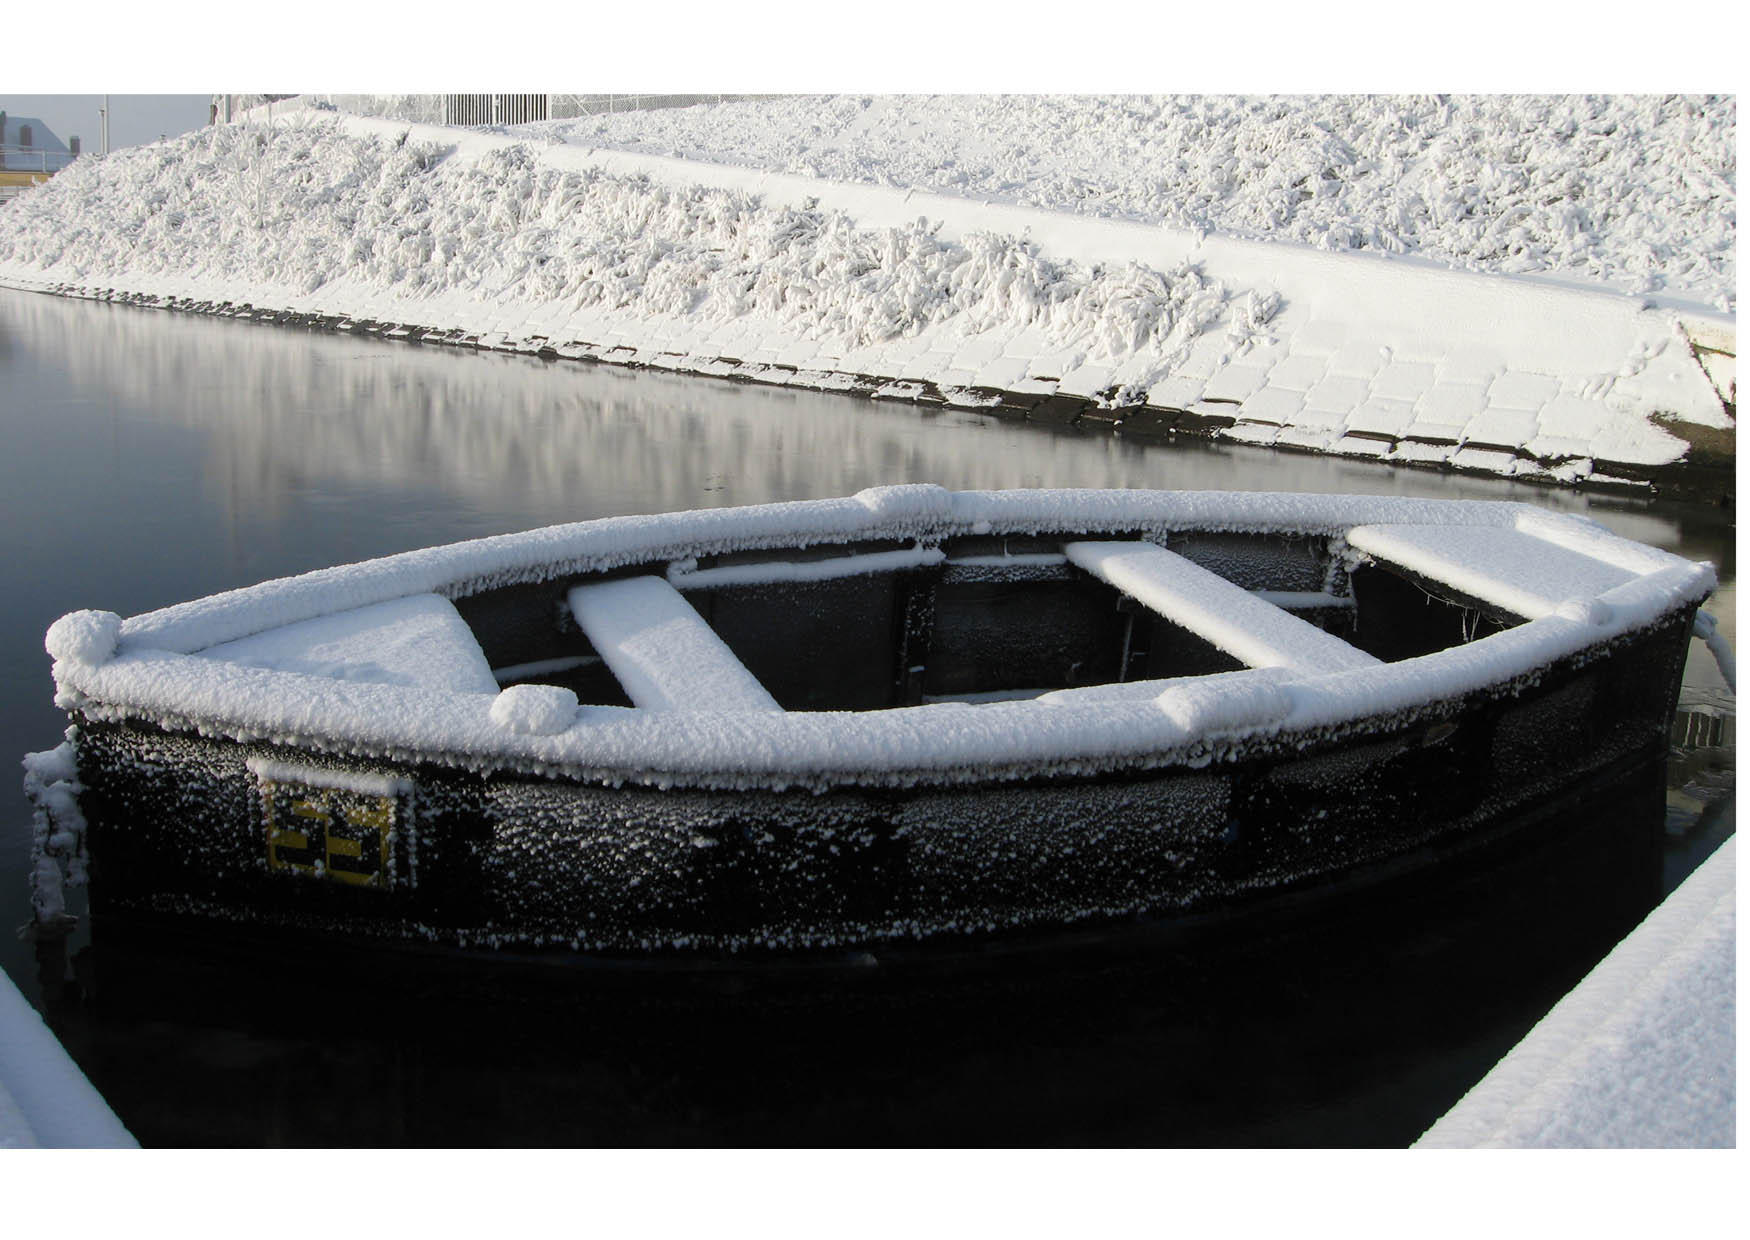 Foto inverno - barco